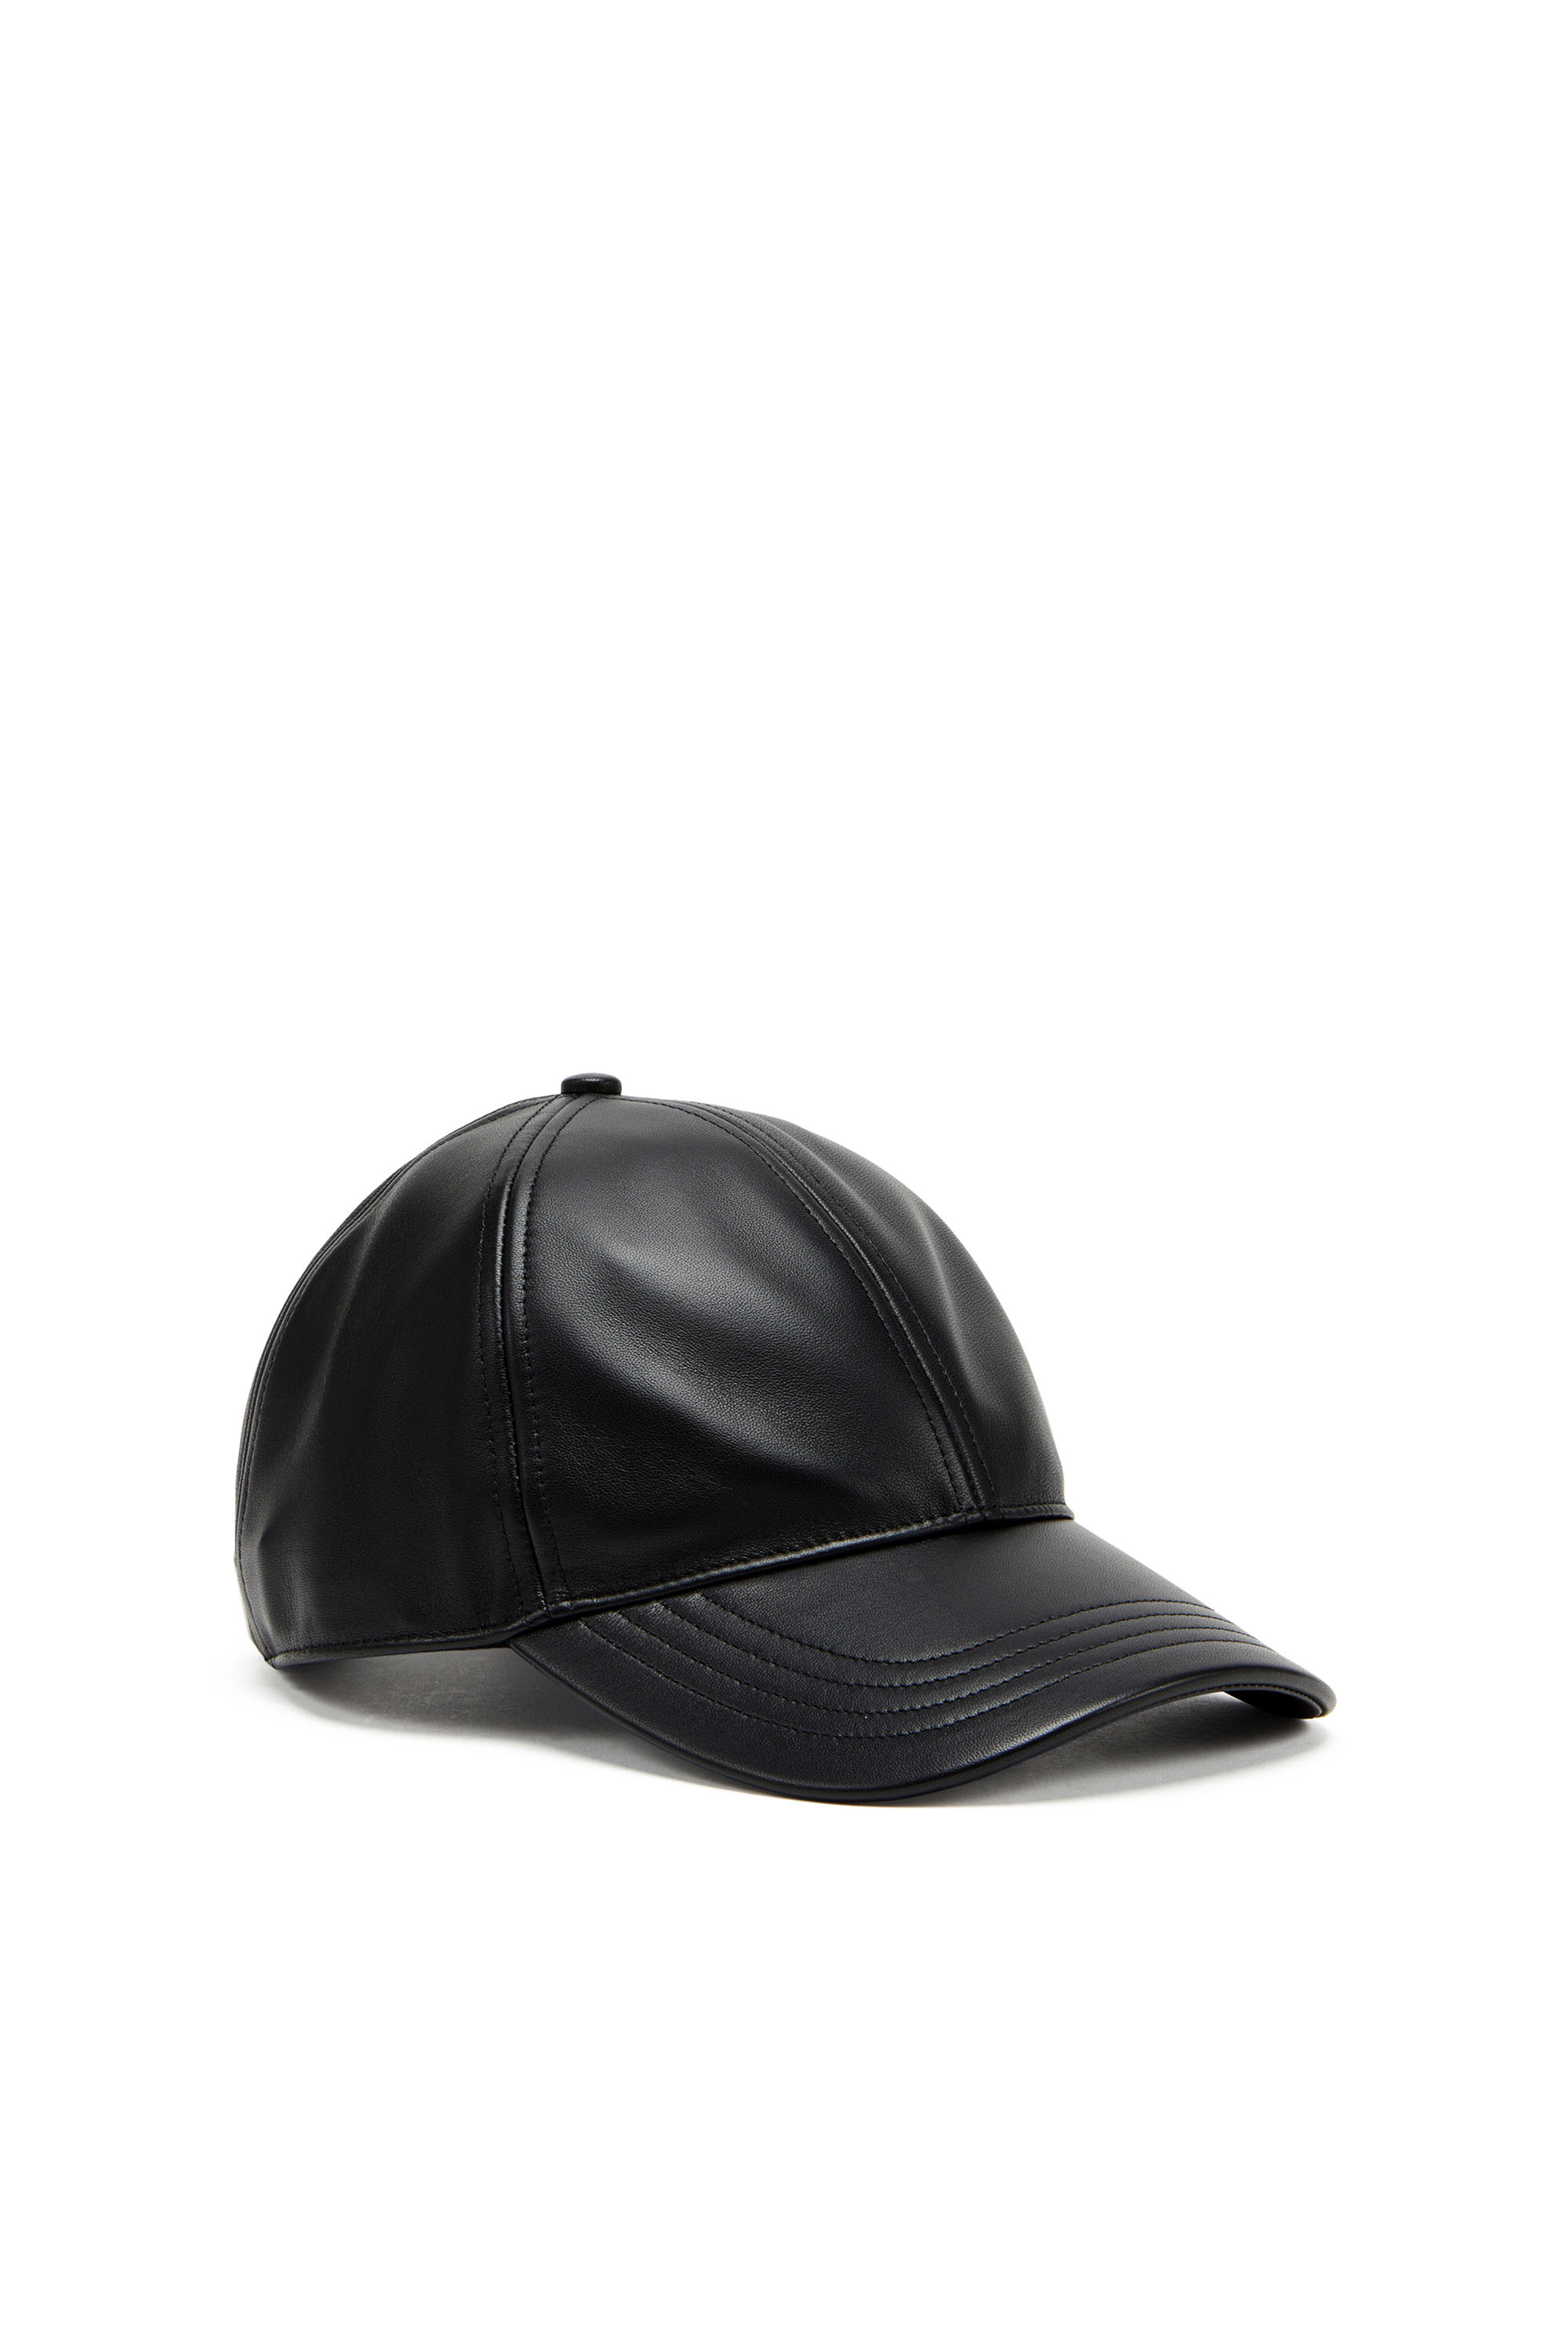 Diesel - Casquette de baseball en cuir avec logo embossé - Chapeaux - Homme - Noir